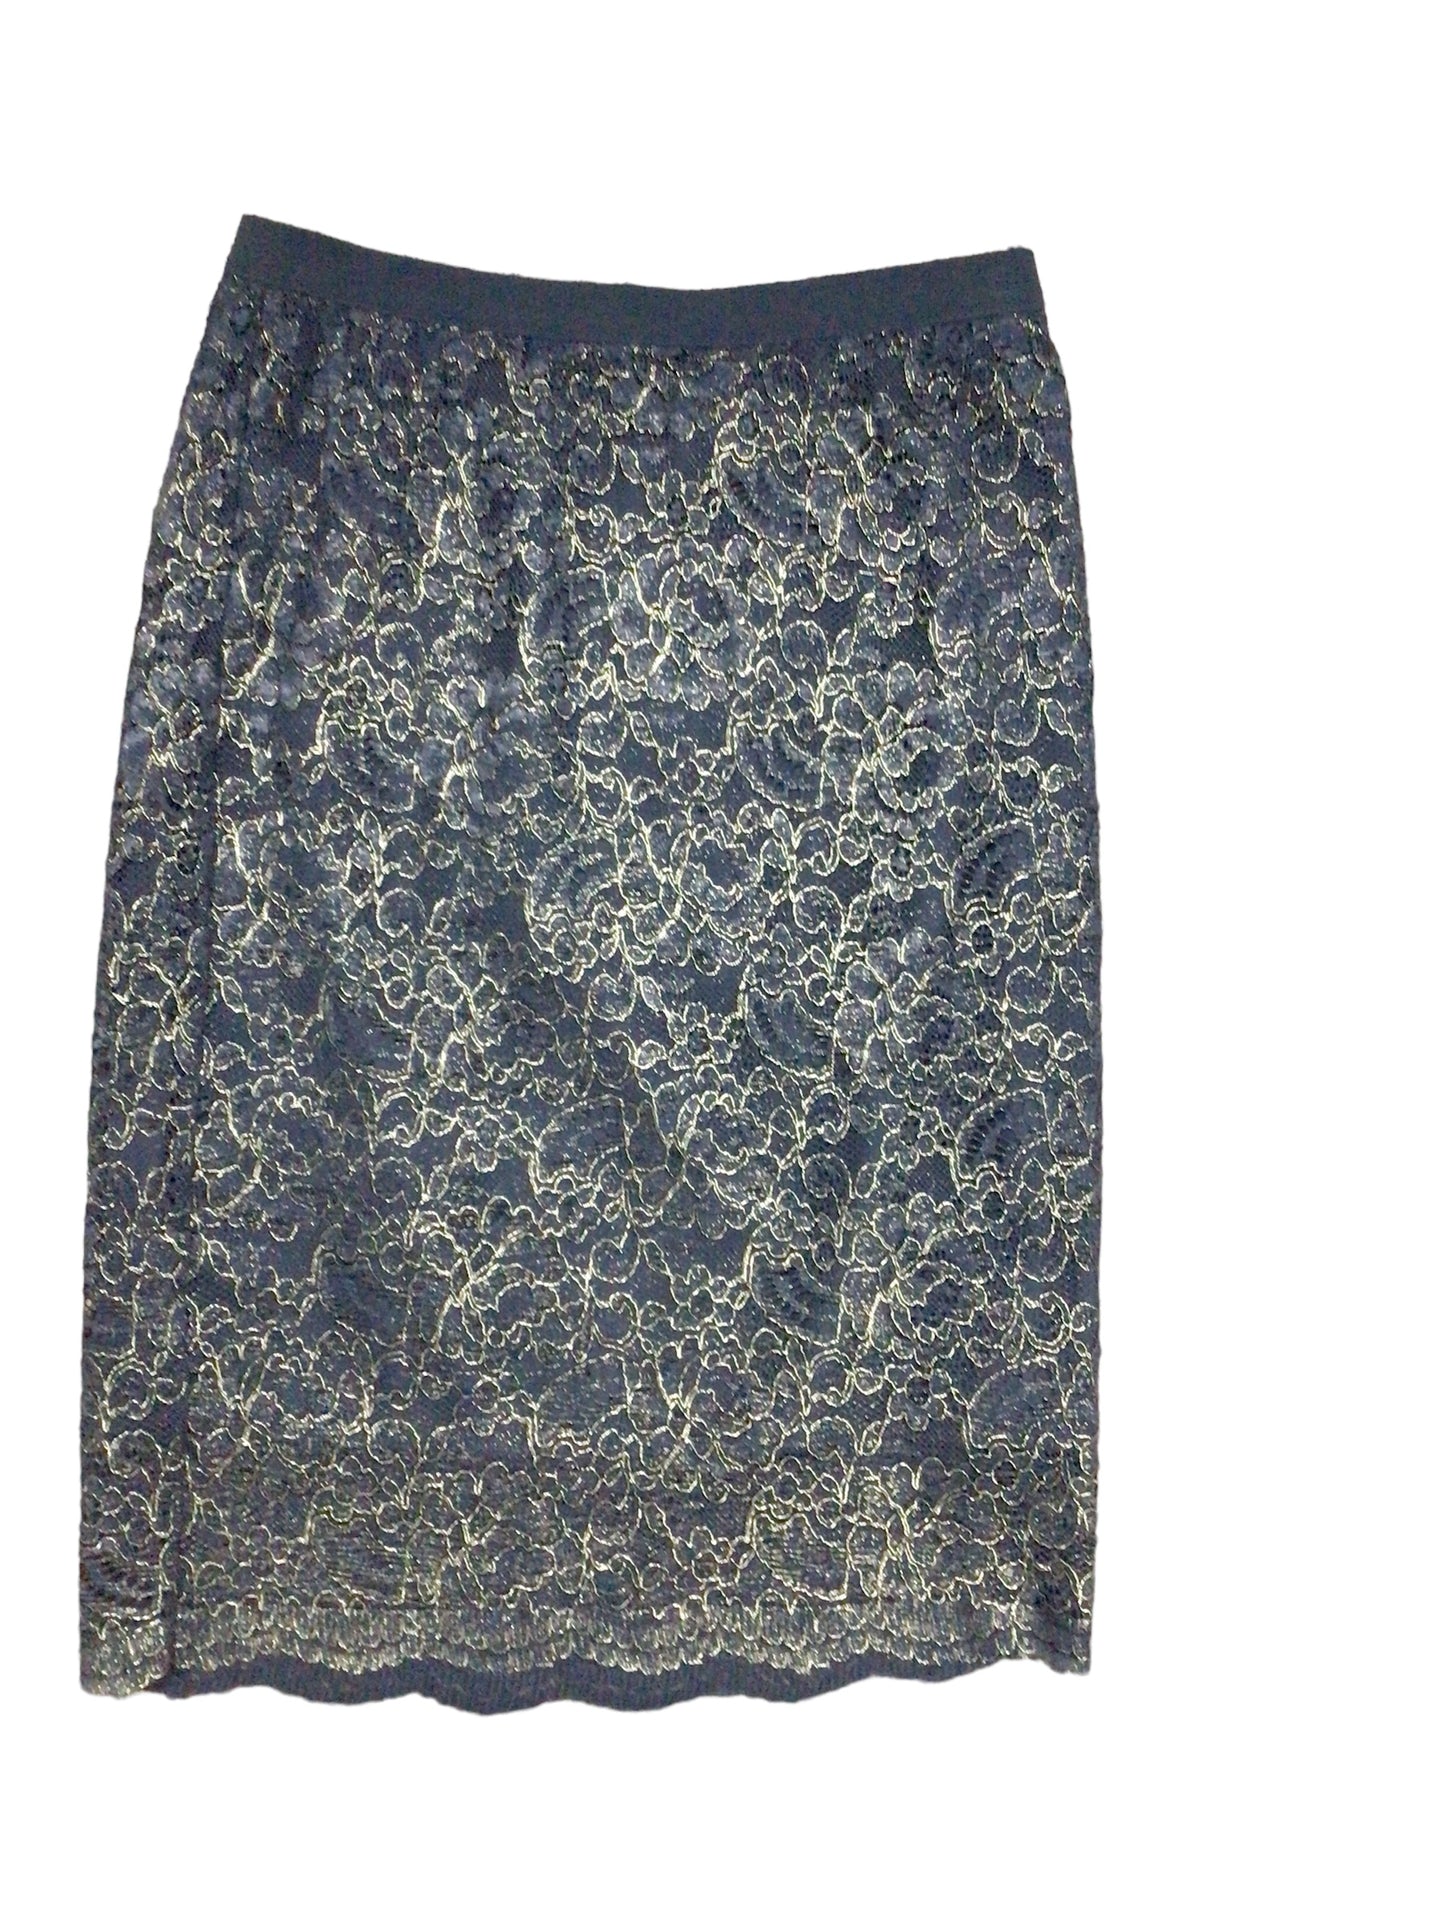 Skirt Designer By Elie Tahari  Size: 2